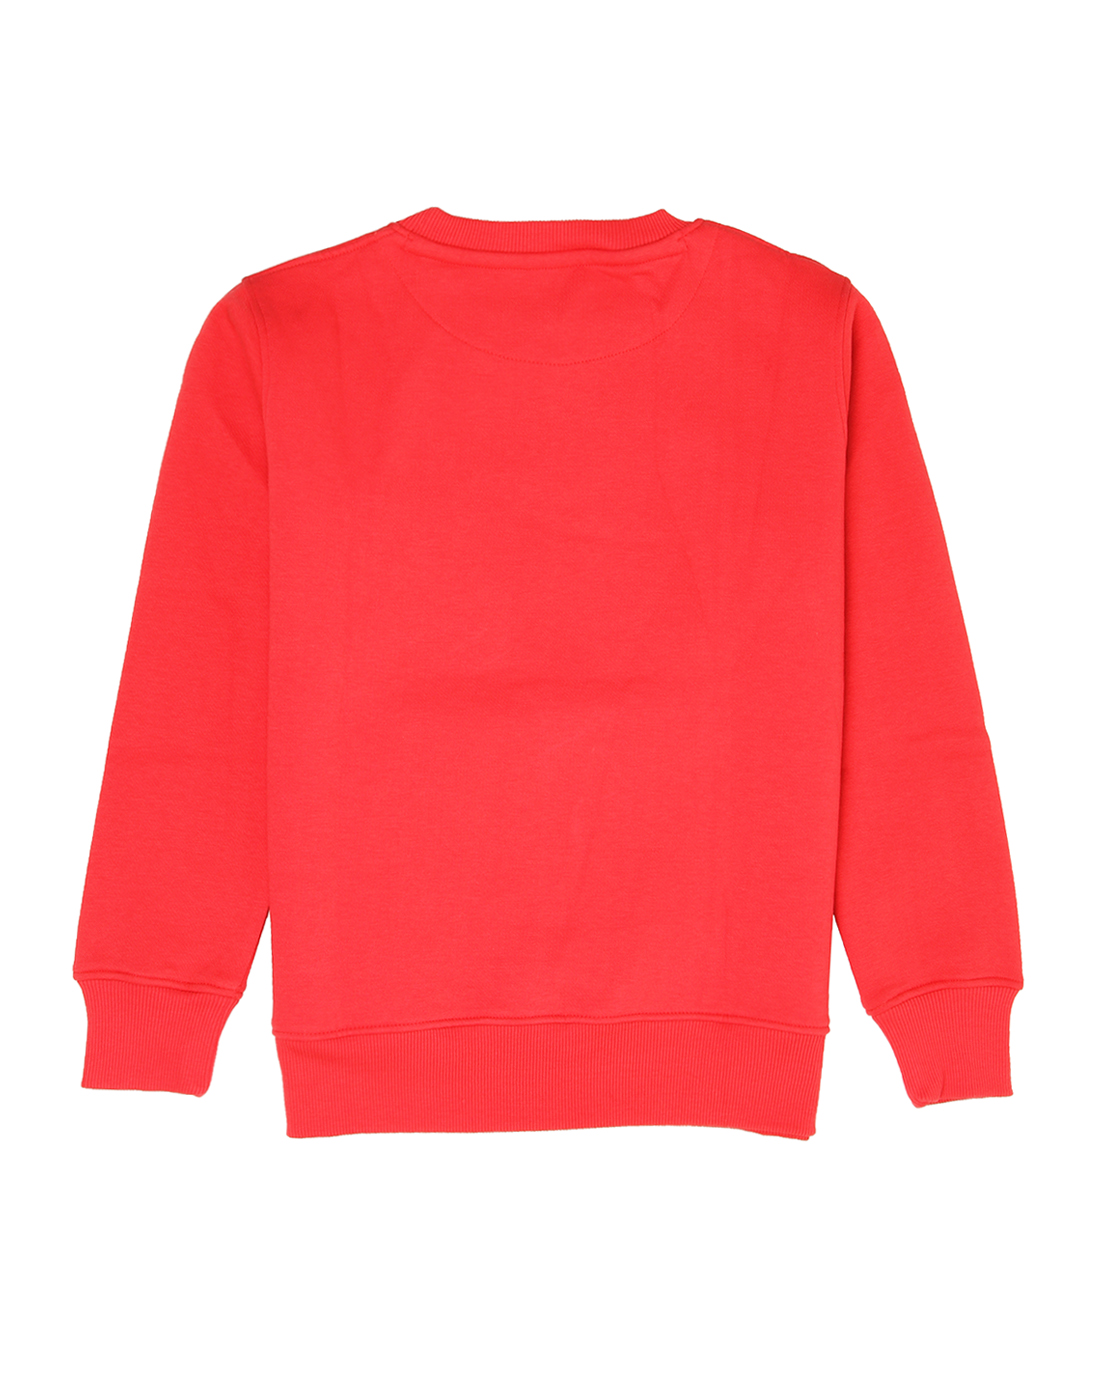 Wingsfield Girls Red Sweatshirt